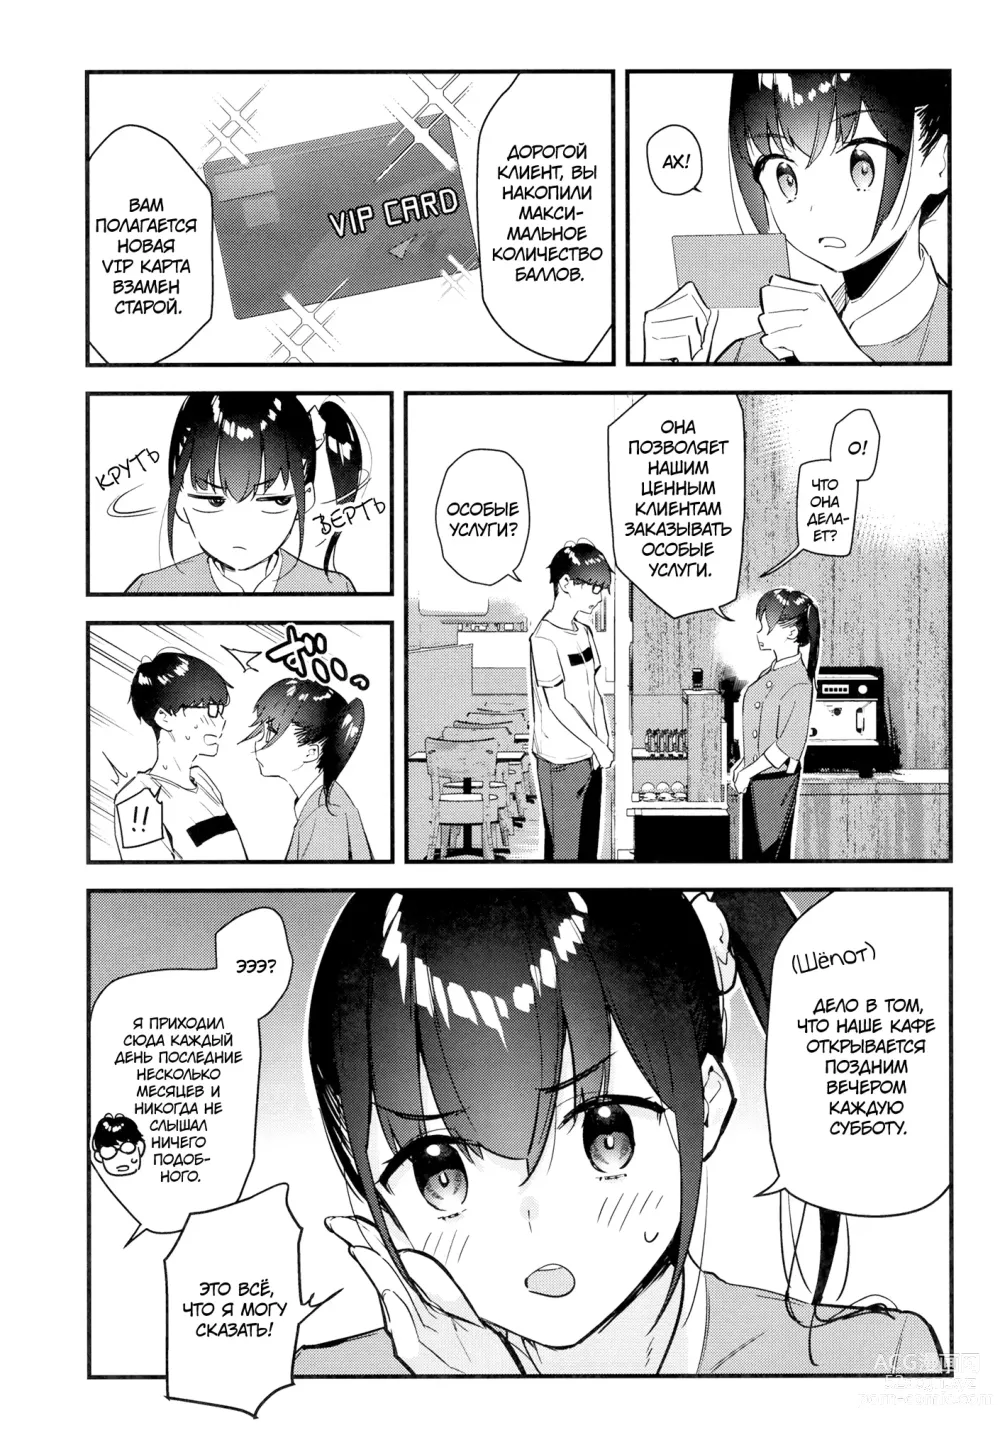 Page 8 of doujinshi Девушка, которая мне нравится, оказывает особые услуги постоянным клиентам